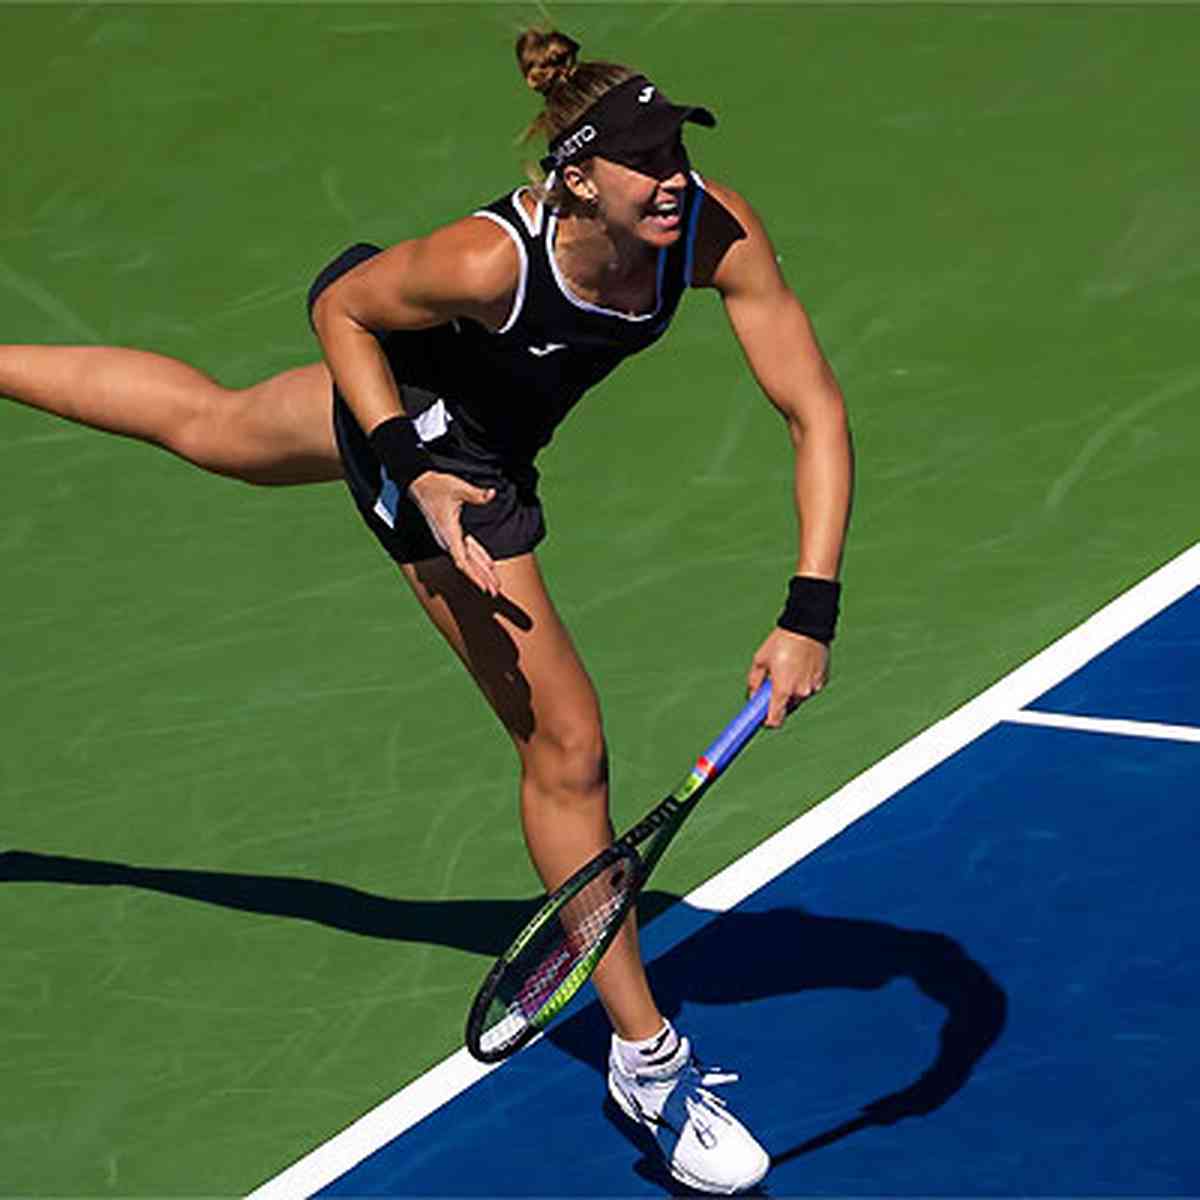 Bia Haddad perde para a número 1 do mundo na semifinal em Roland Garros -  Superesportes